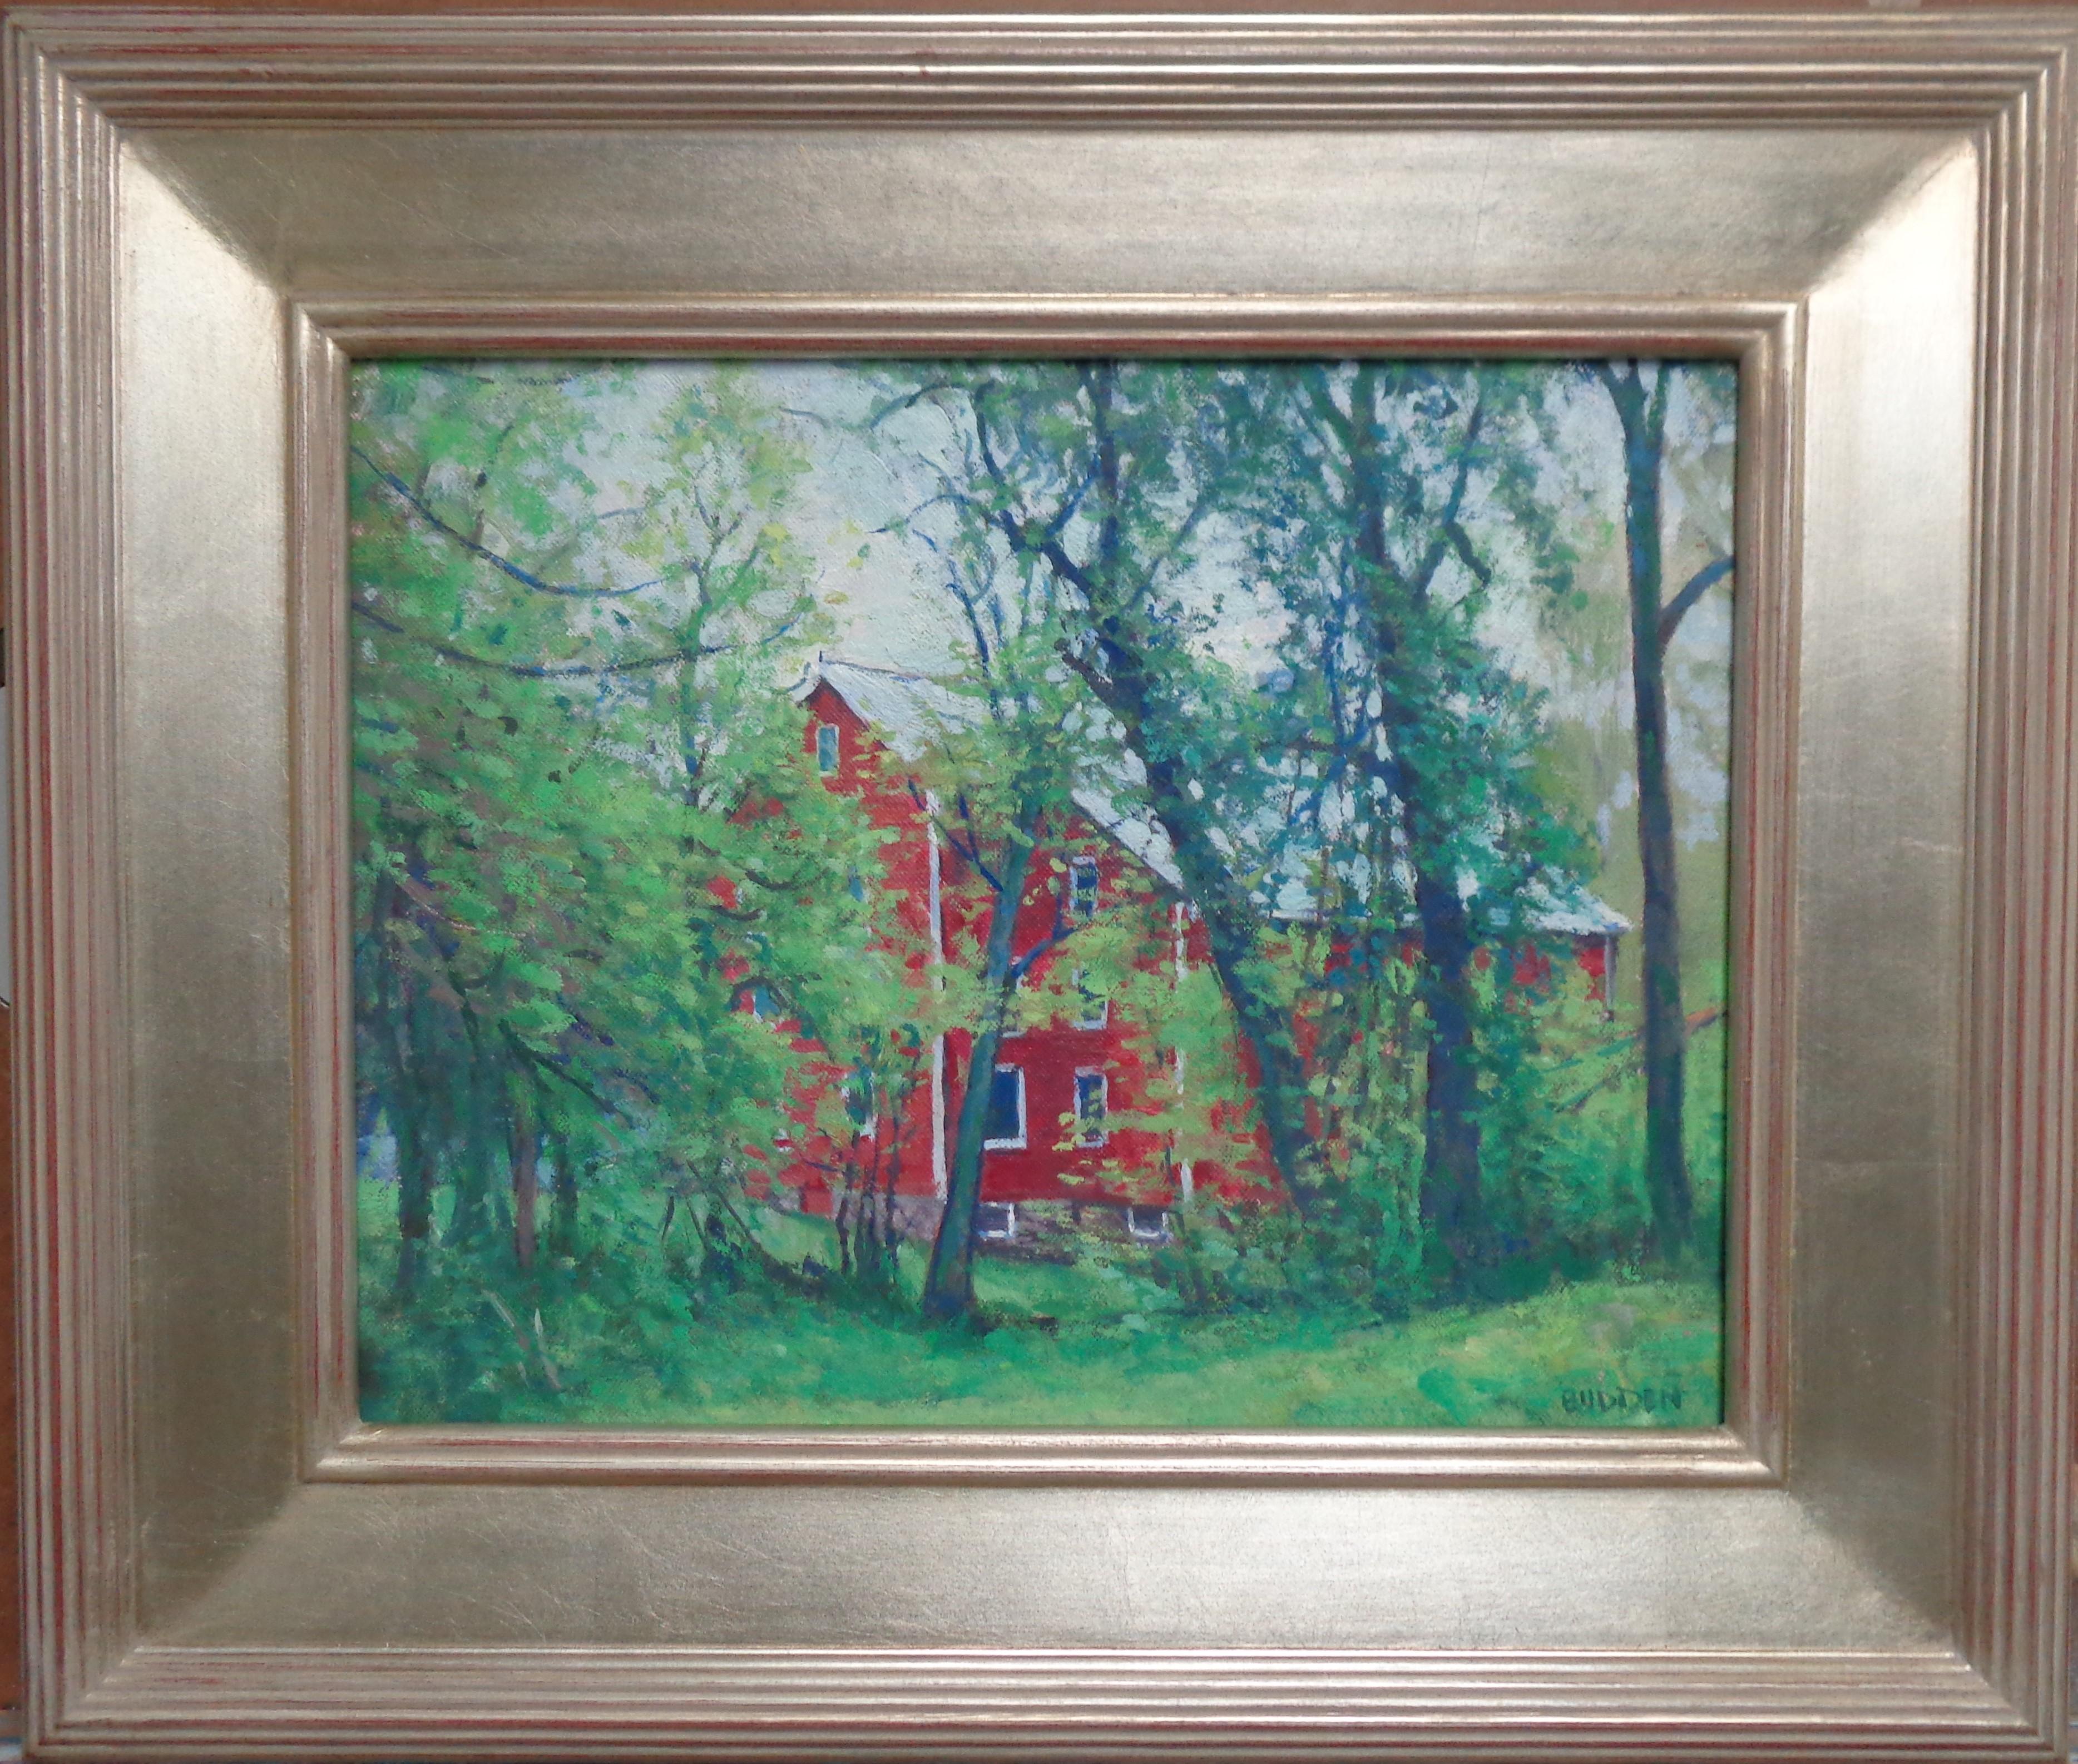 Farben des Frühlings
Öl/Panel
11 x 14 Bild ungerahmt
Colors Of Spring ist ein Pleinair-Gemälde von Kirby's Mill, das ich in der Nähe meines Studios gemalt habe. Ich war fasziniert von den Komplementärfarben Rot und Grün und der Darstellung der Mühle